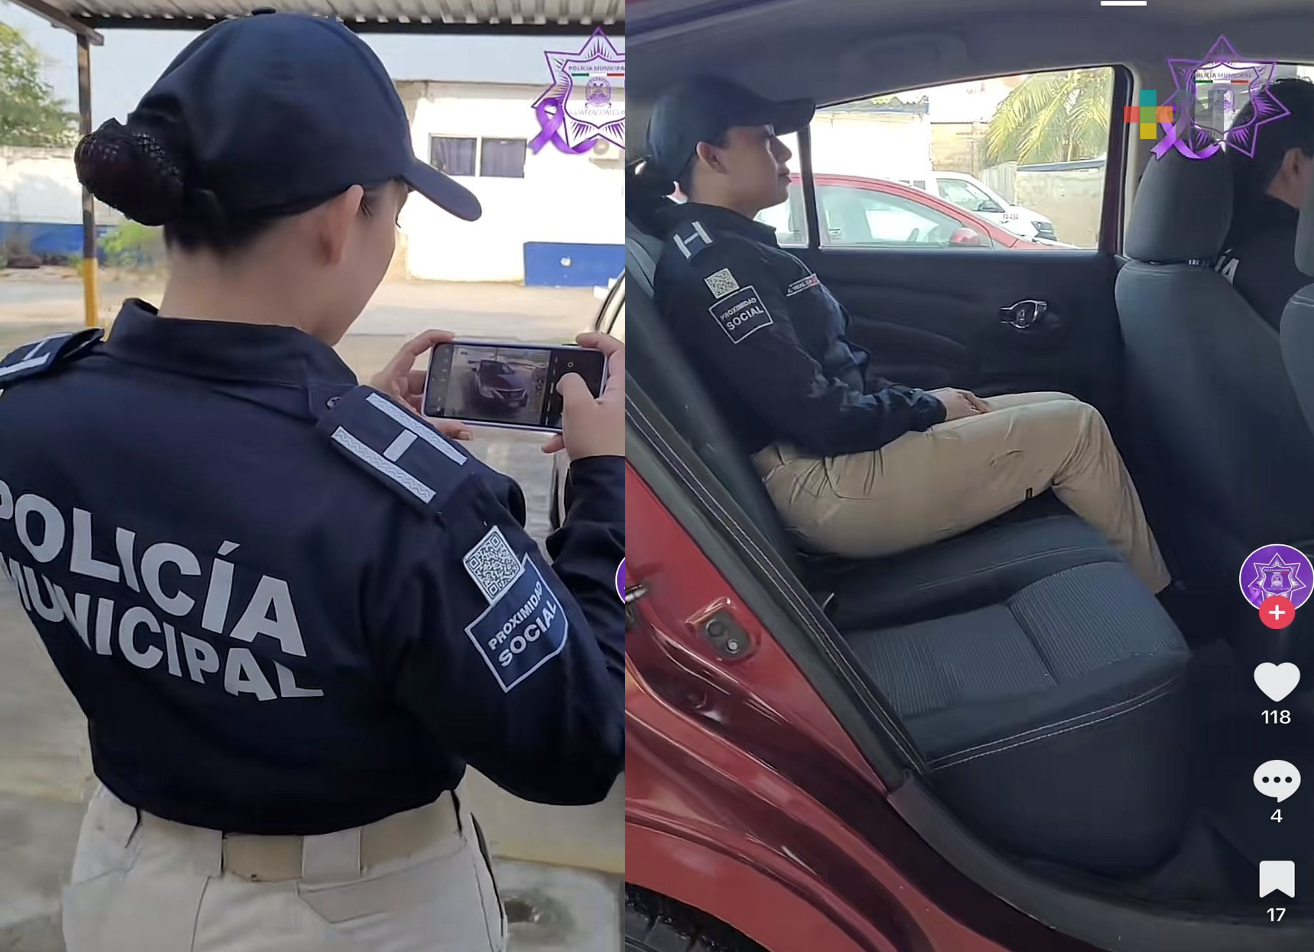 Policía de Coatzacoalcos emite recomendaciones a mujeres para viajar seguras en taxi